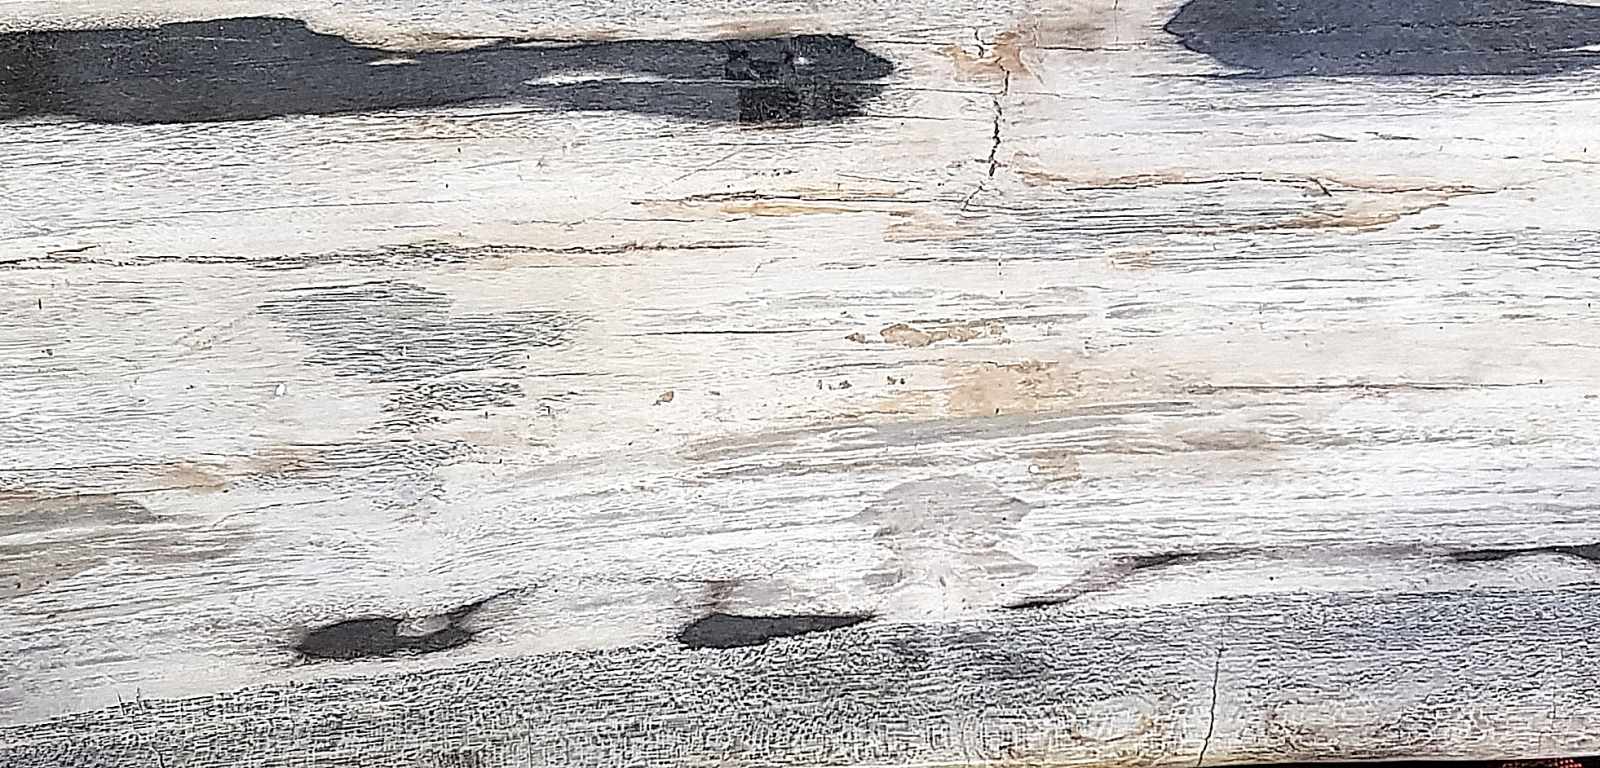 Petrified Wooden Trunk, half, black and white Versteinerter Holzstamm, Hälfte, schwarz-weiss. - Image 2 of 3